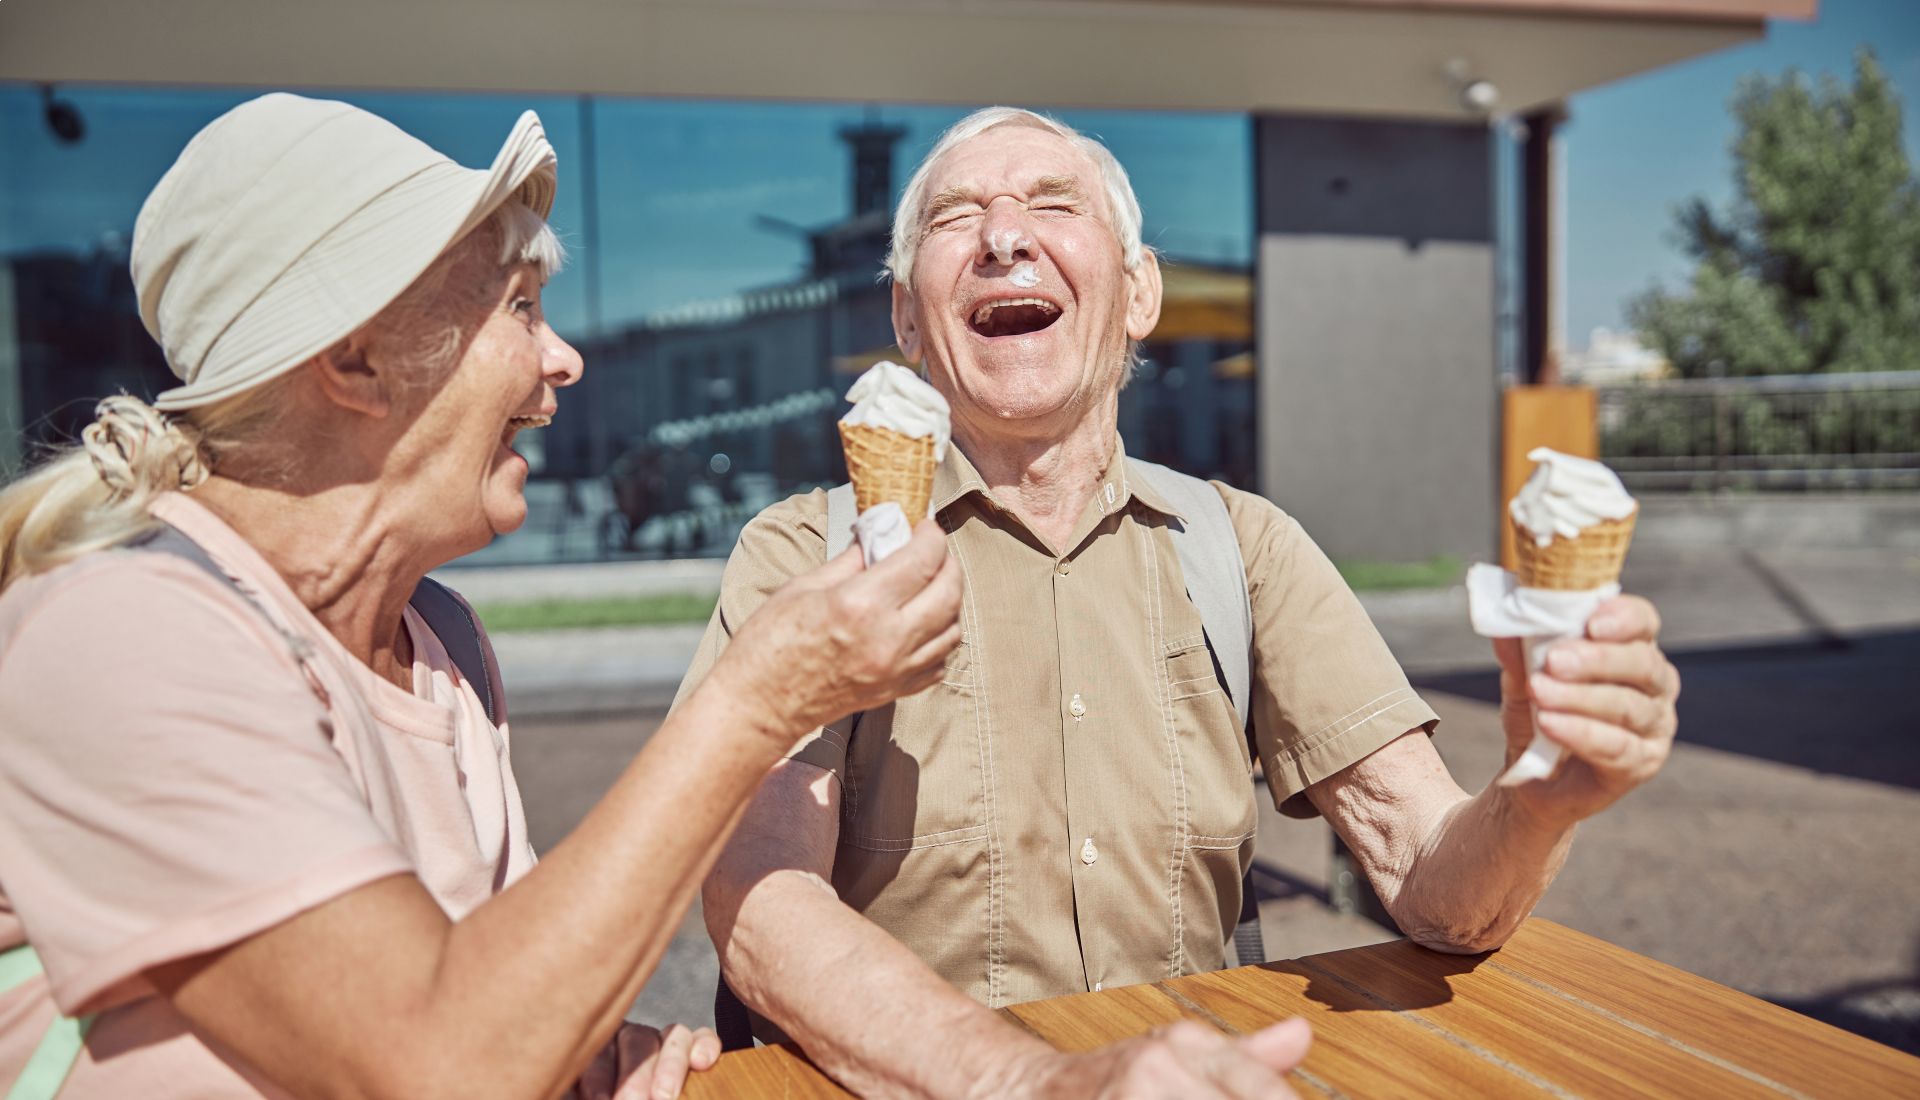 Comment profiter d'une retraite heureuse et épanouie